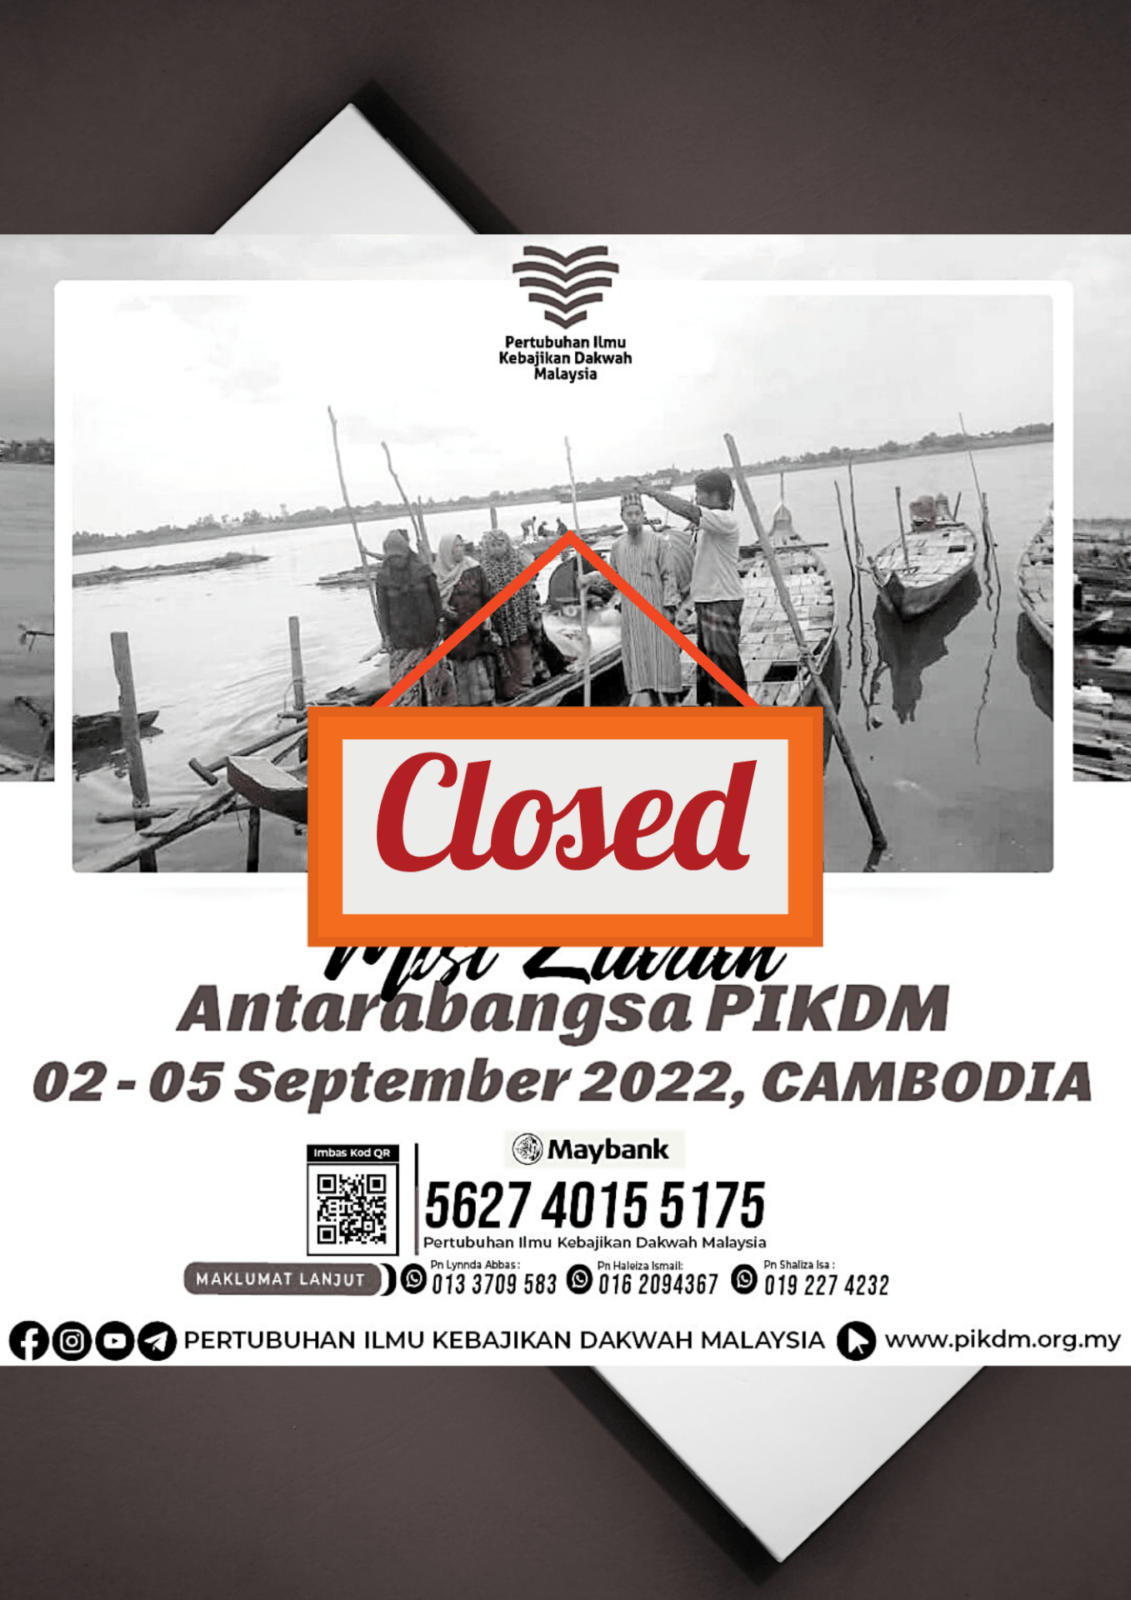 Misi-Ziarah-Antarabangsa-PIKDM-Cambodia-Closed